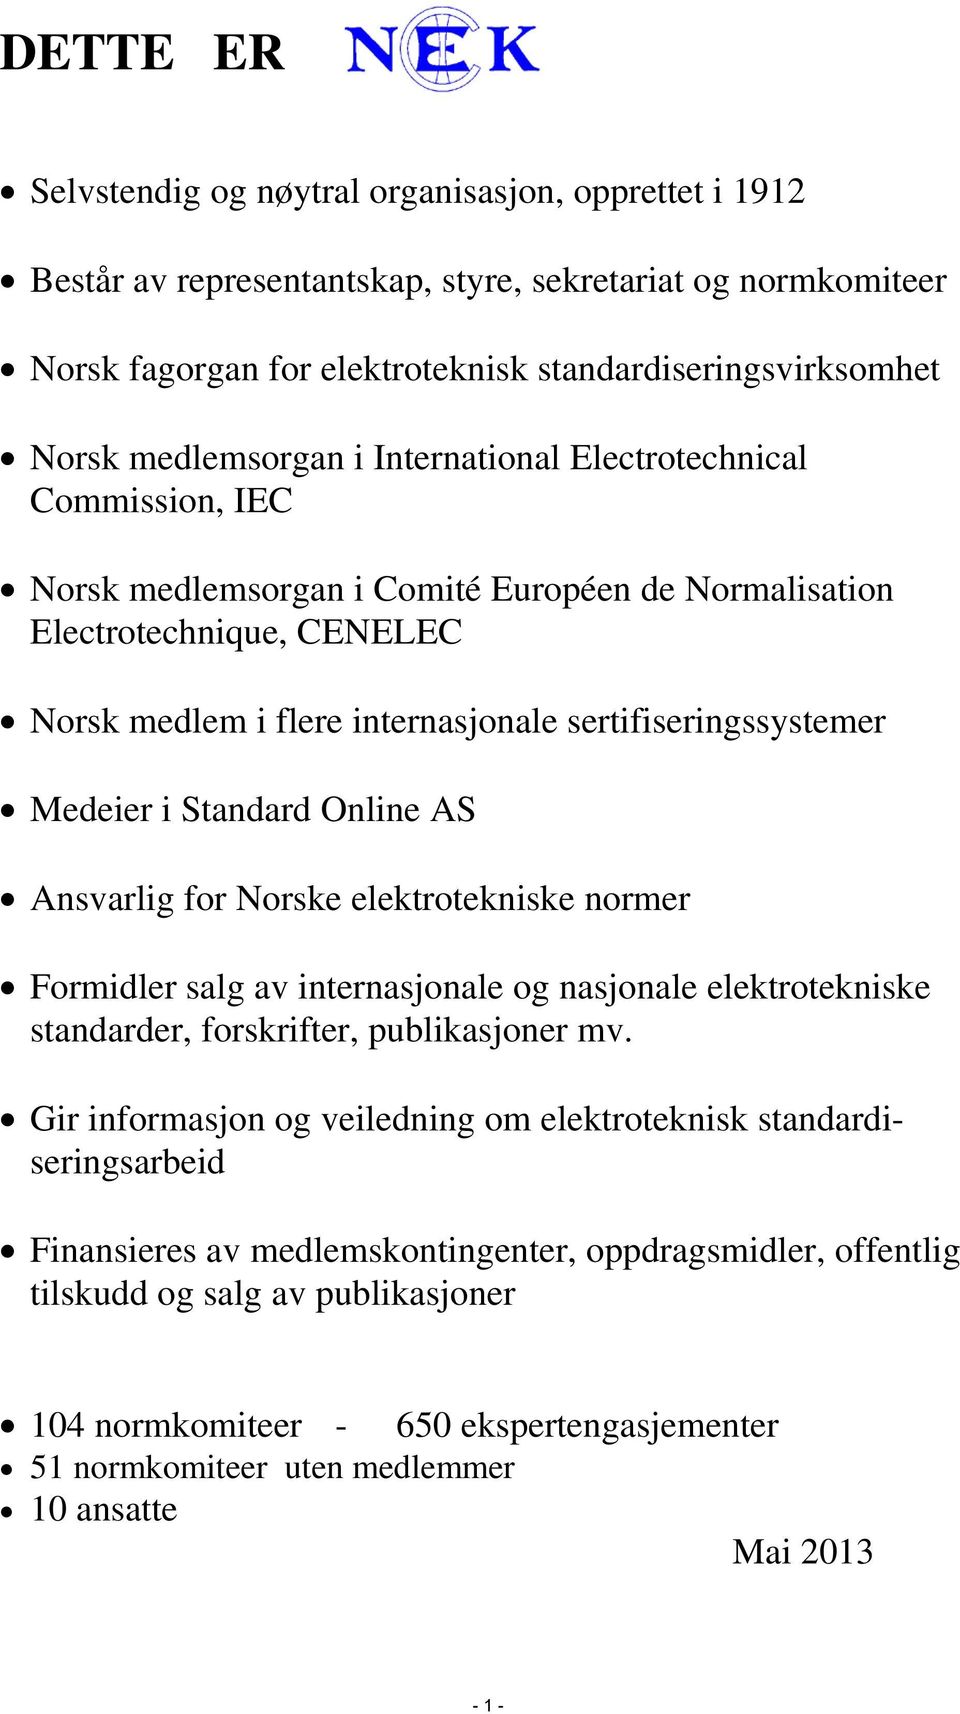 sertifiseringssystemer Medeier i Standard Online AS Ansvarlig for Norske elektrotekniske normer Formidler salg av internasjonale og nasjonale elektrotekniske standarder, forskrifter, publikasjoner mv.